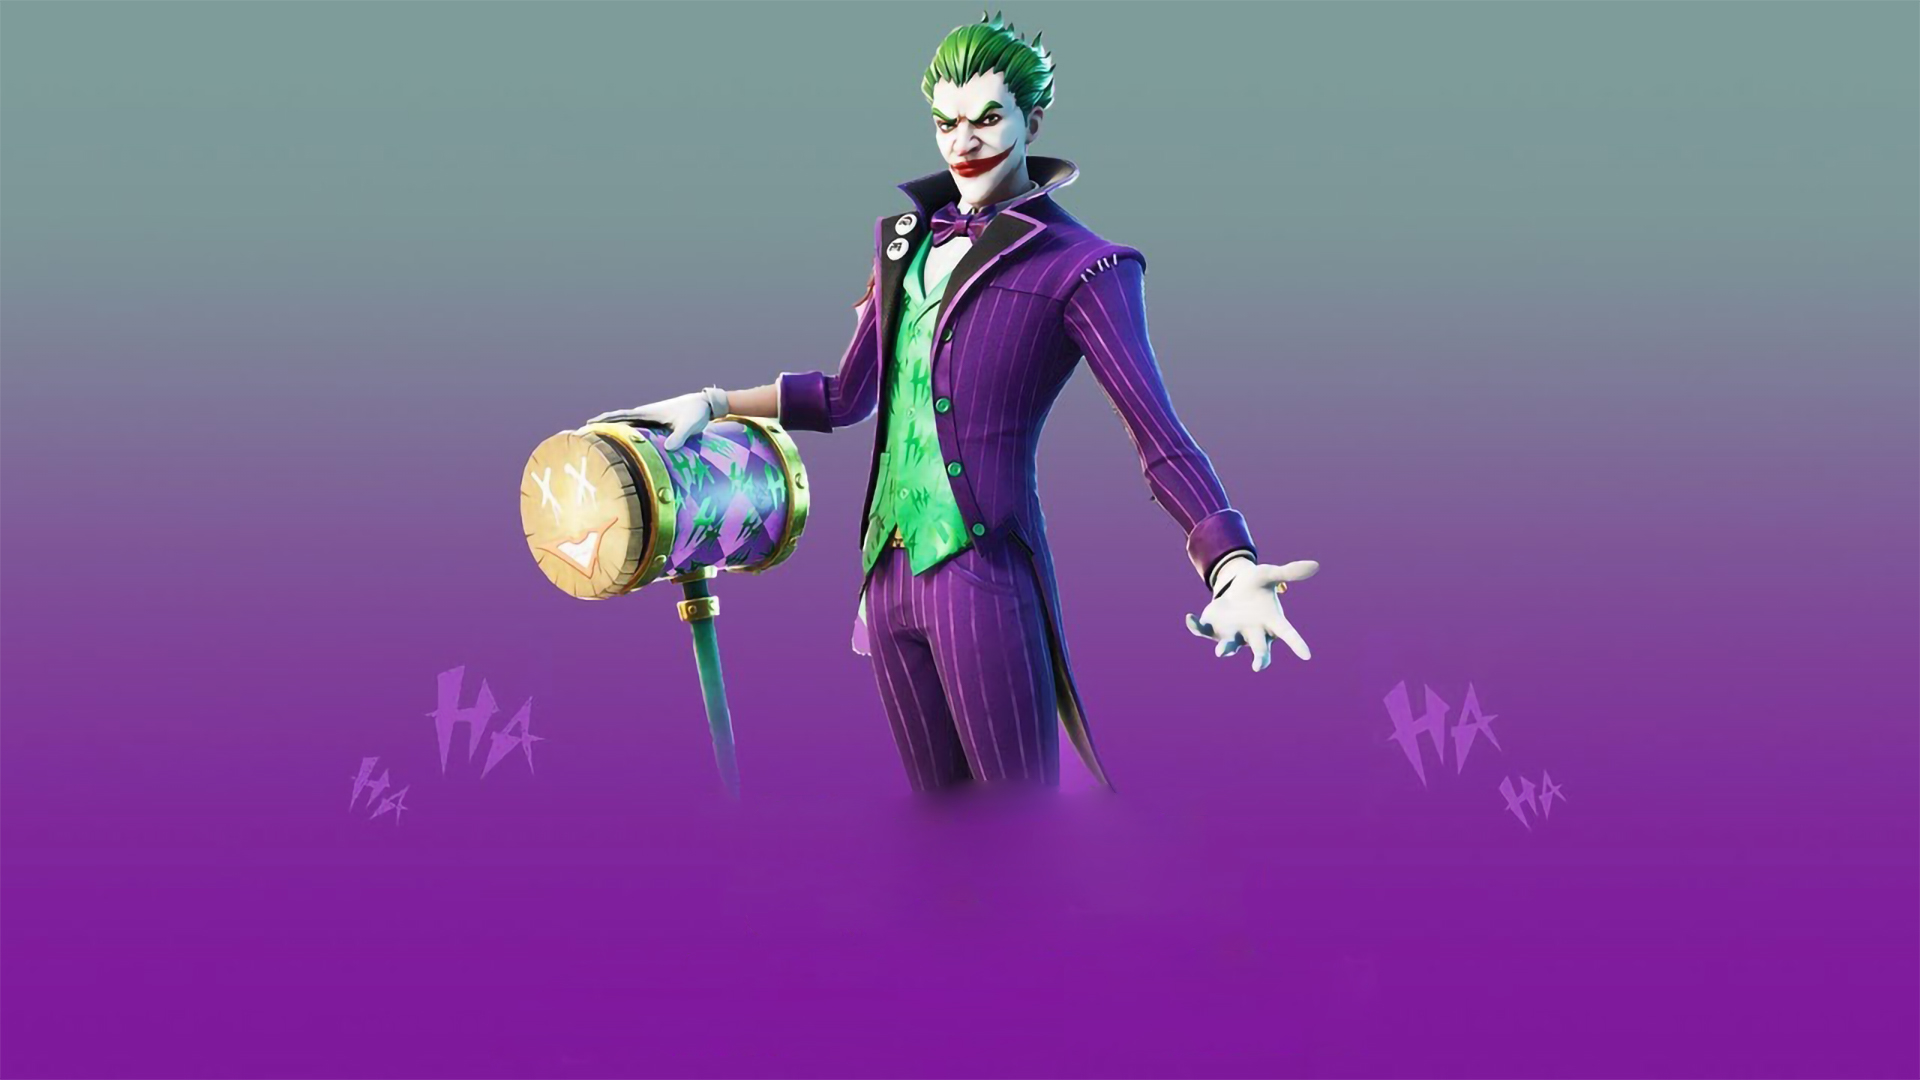 Hình Joker màu tím chất ngầu